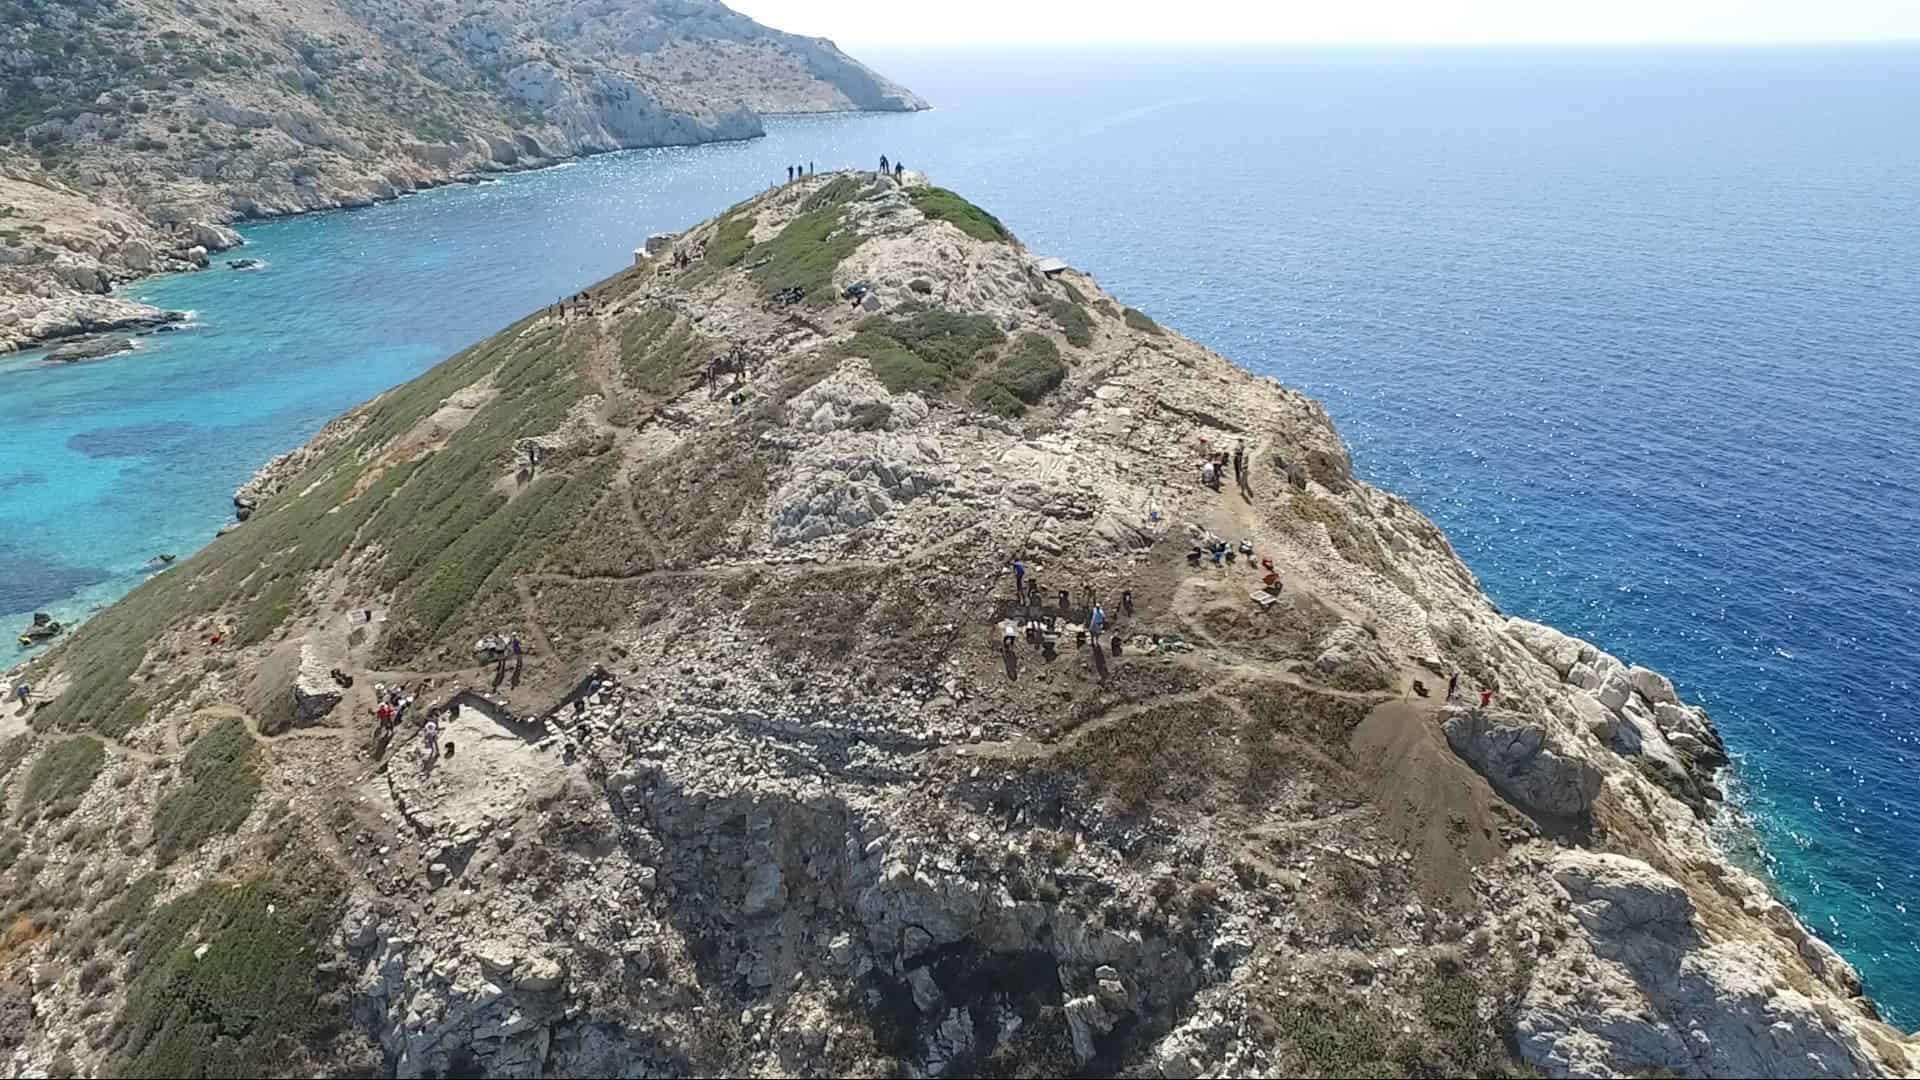 Excavations underway on Dhaskalio, off Keros. Image credit: Cambridge Keros Project.